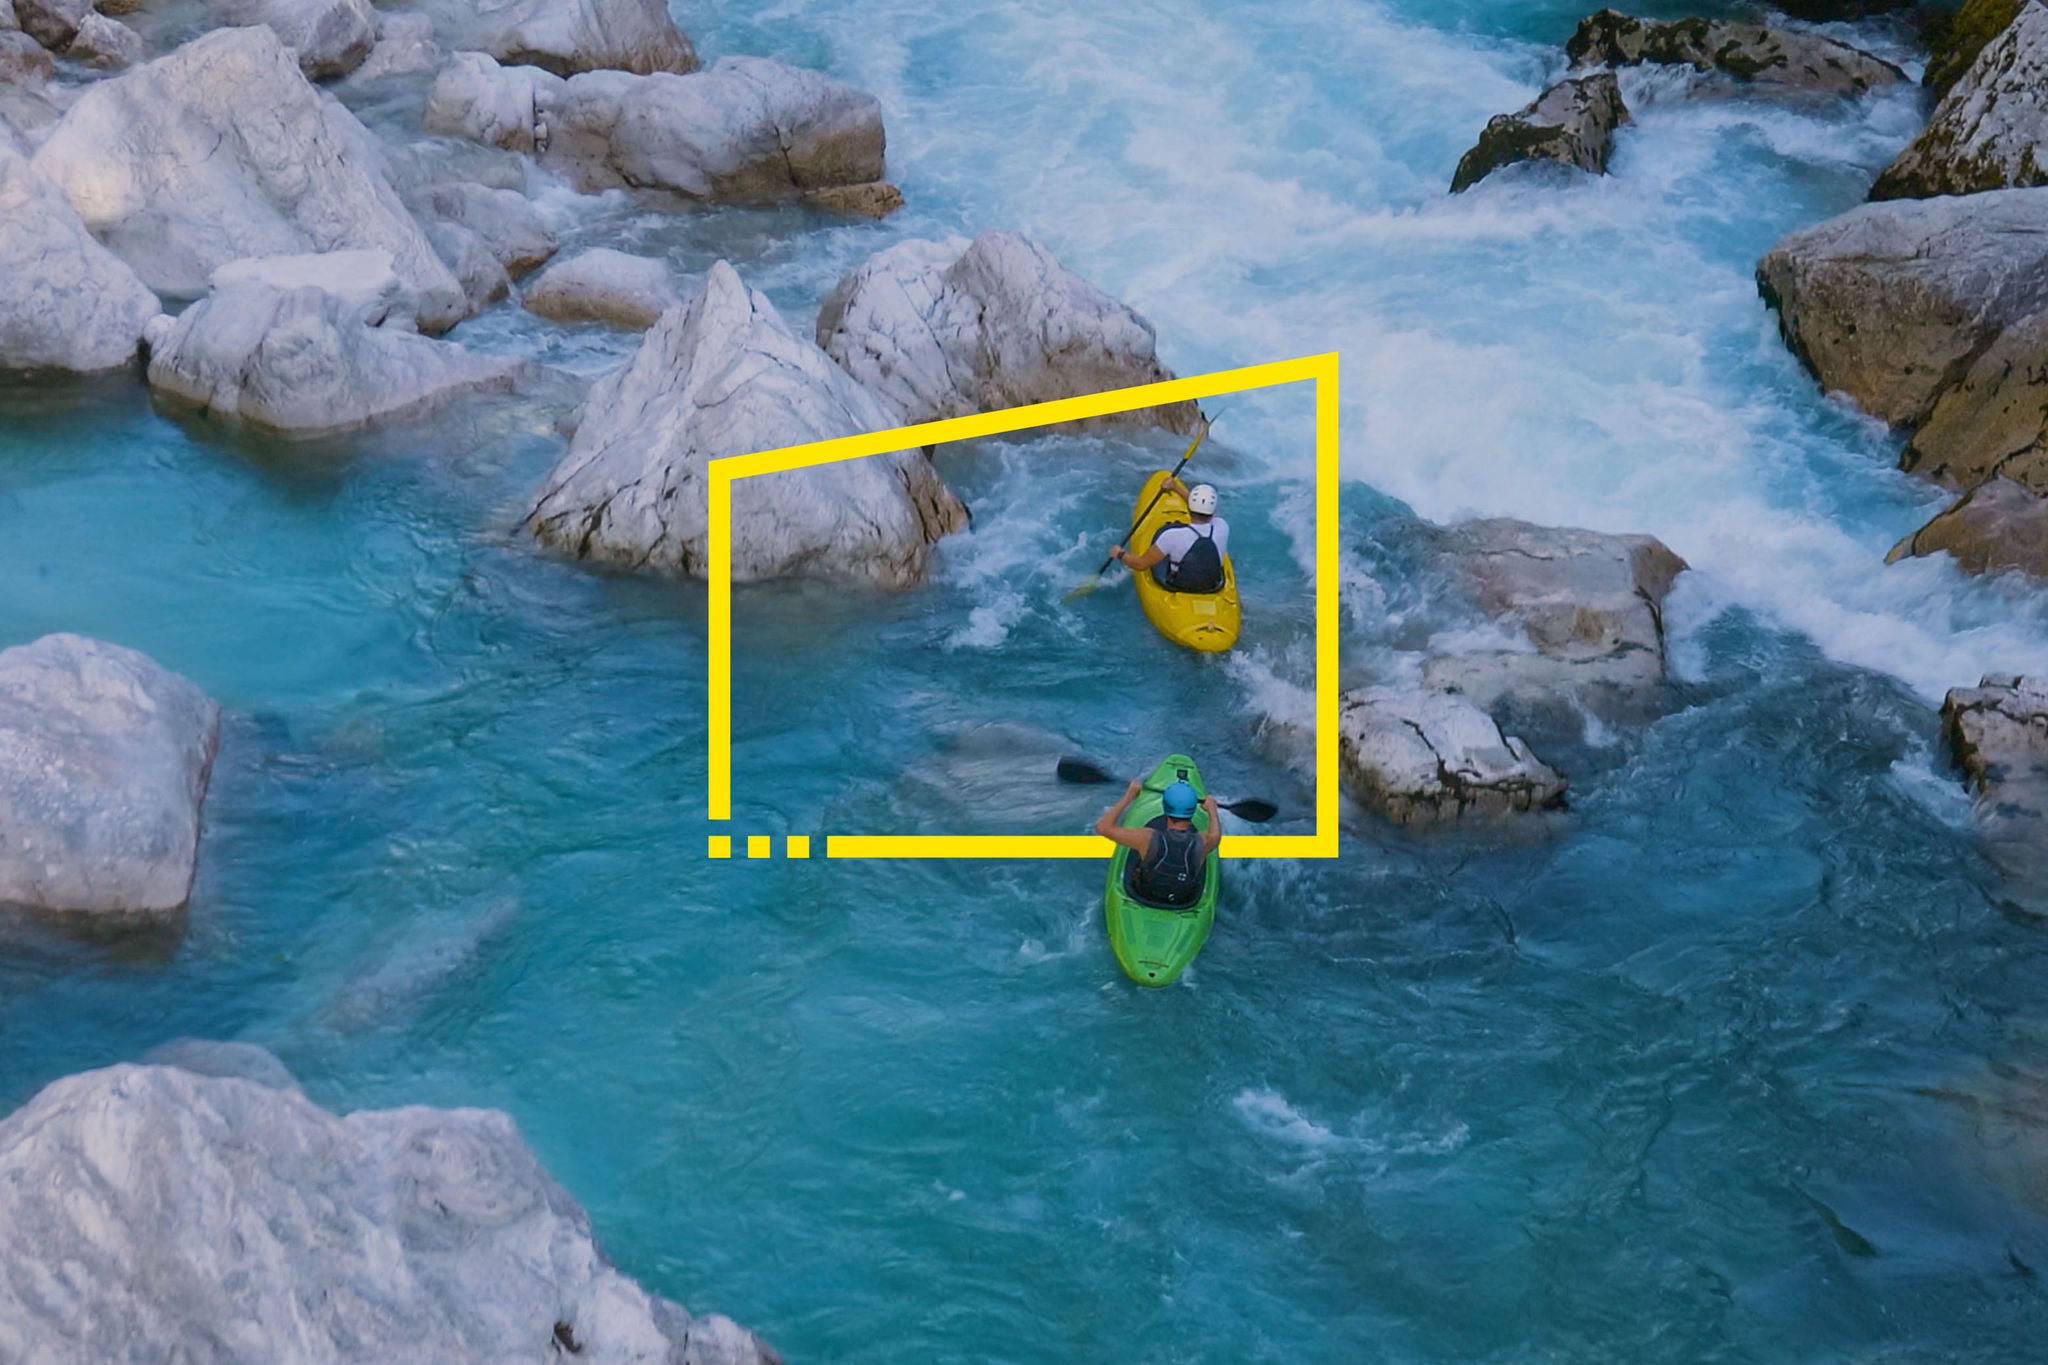 Two men kayaking through a rough river static